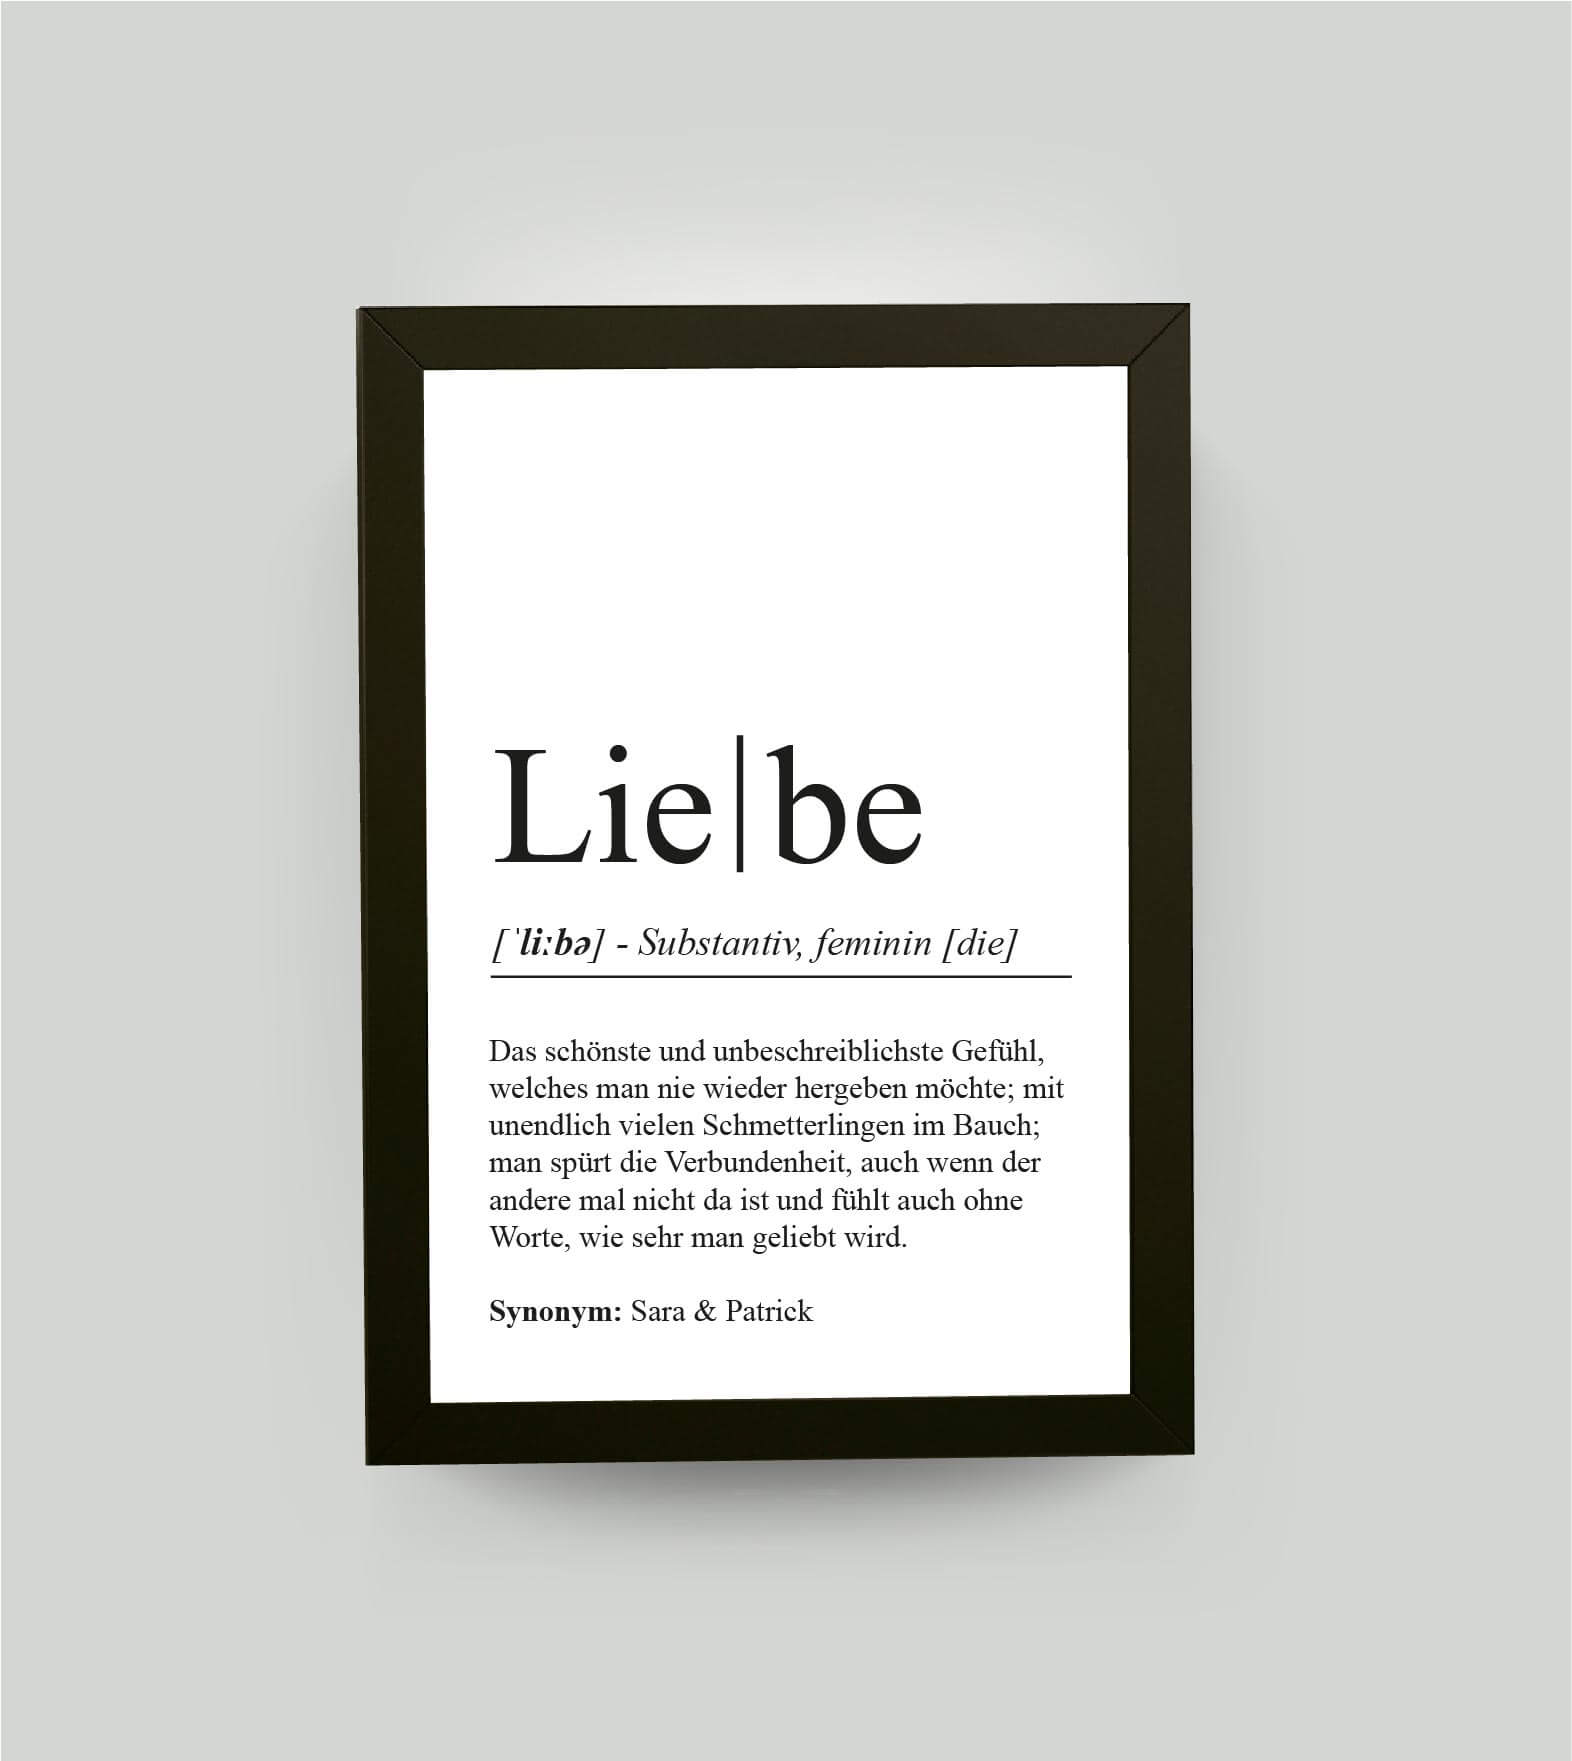 Personalisiertes Bild “Definition LIEBE”, DIN A4, mit Rahmen schwarz 21x30cm, ohne Passepartout